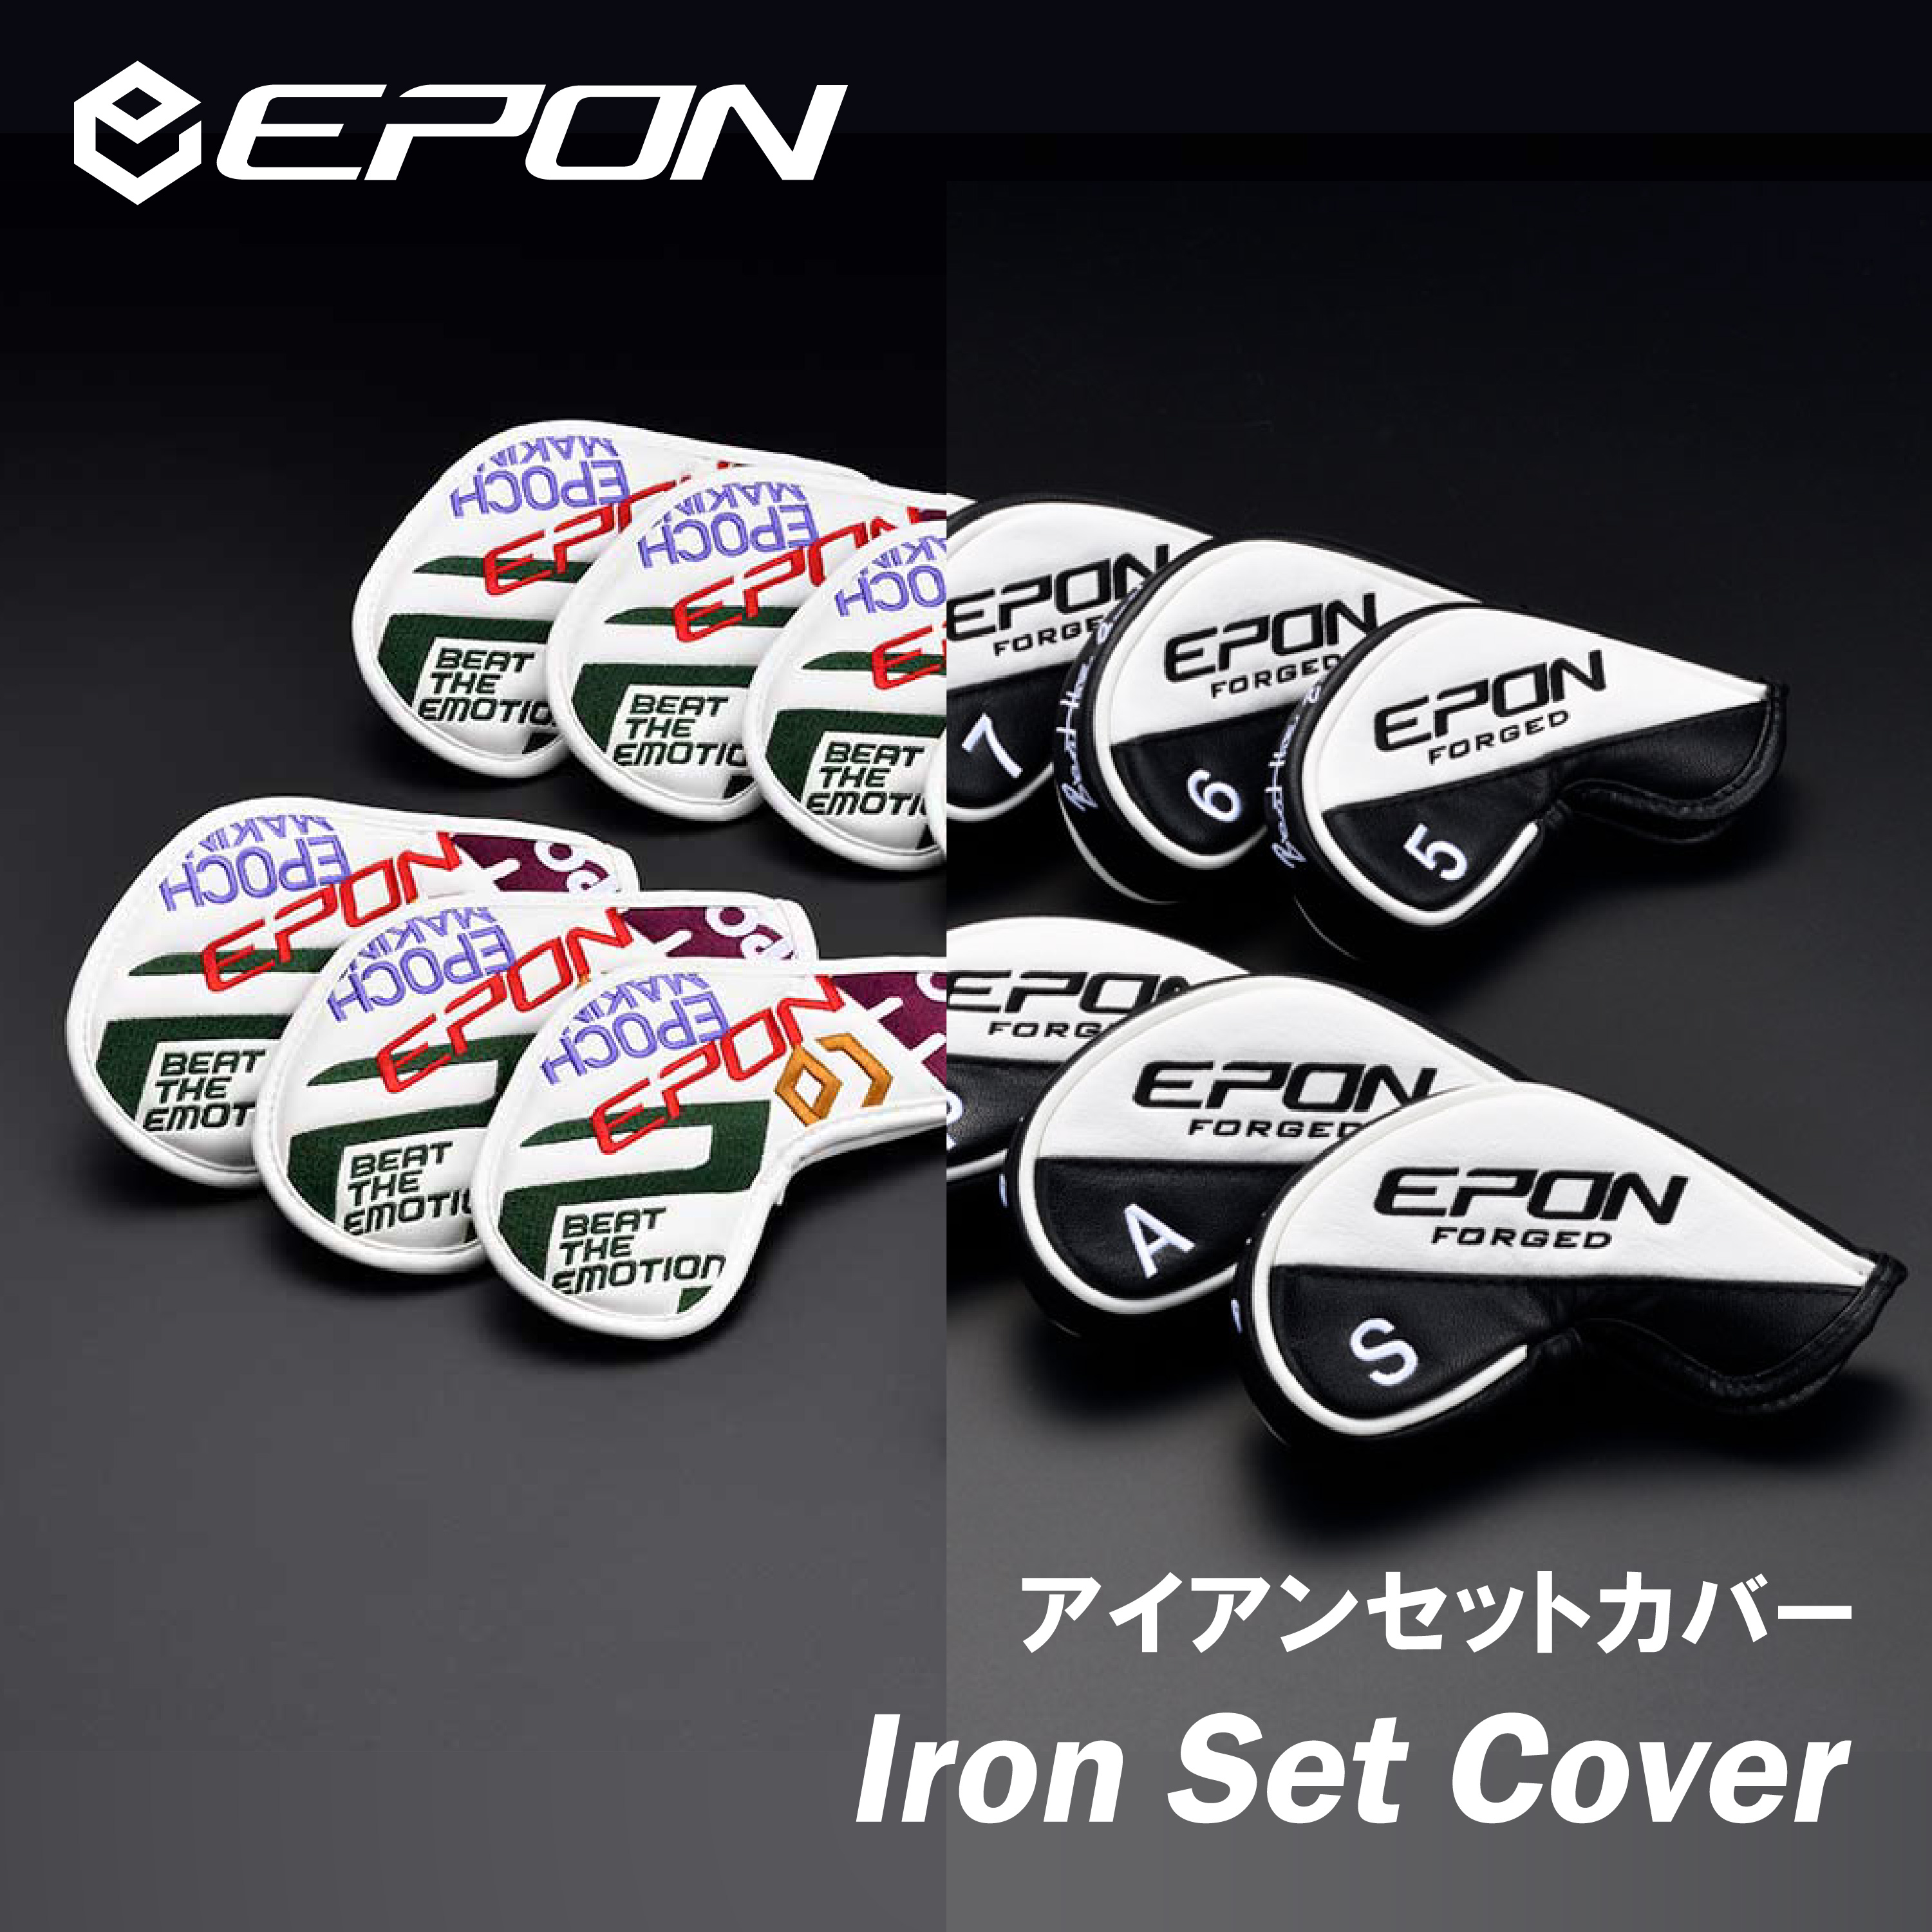 EPON Iron Set Cover